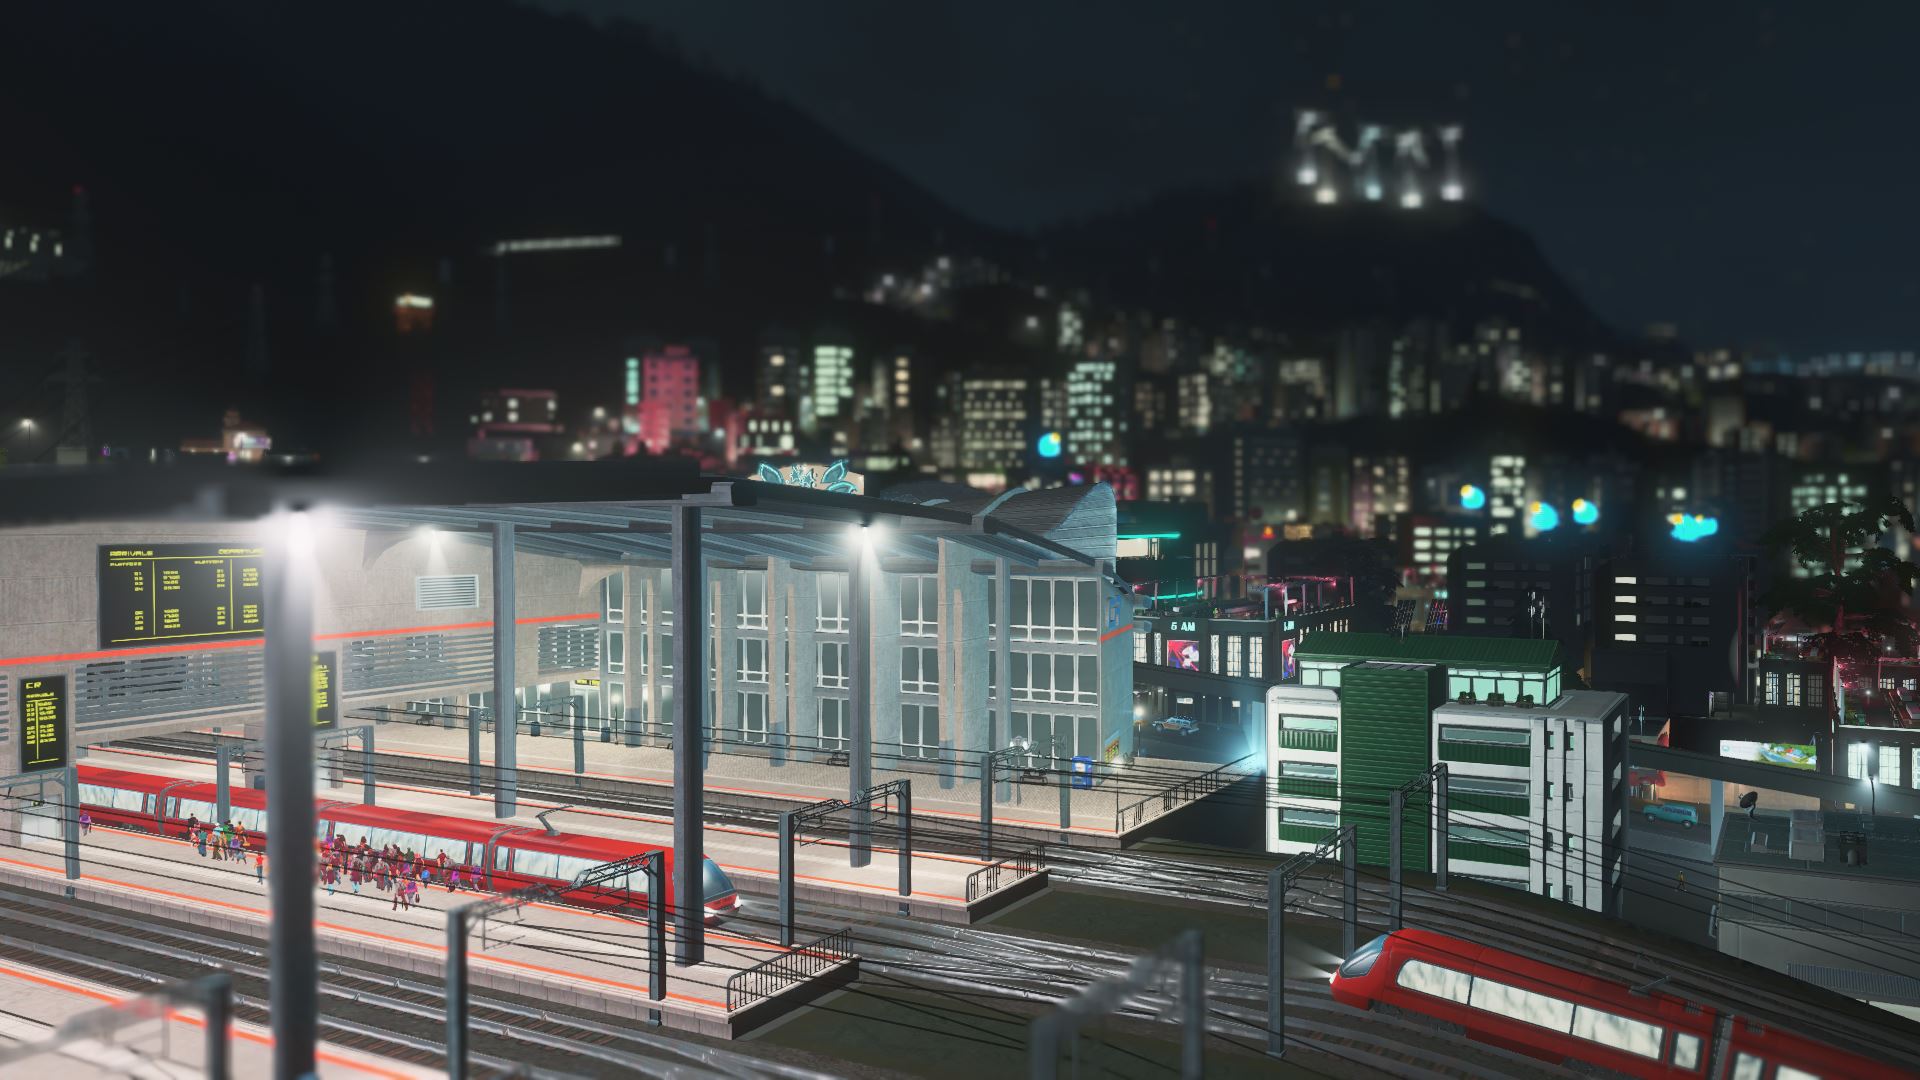 Endstation eines großen Bahnhofs in Cities: Skylines bei Nacht.